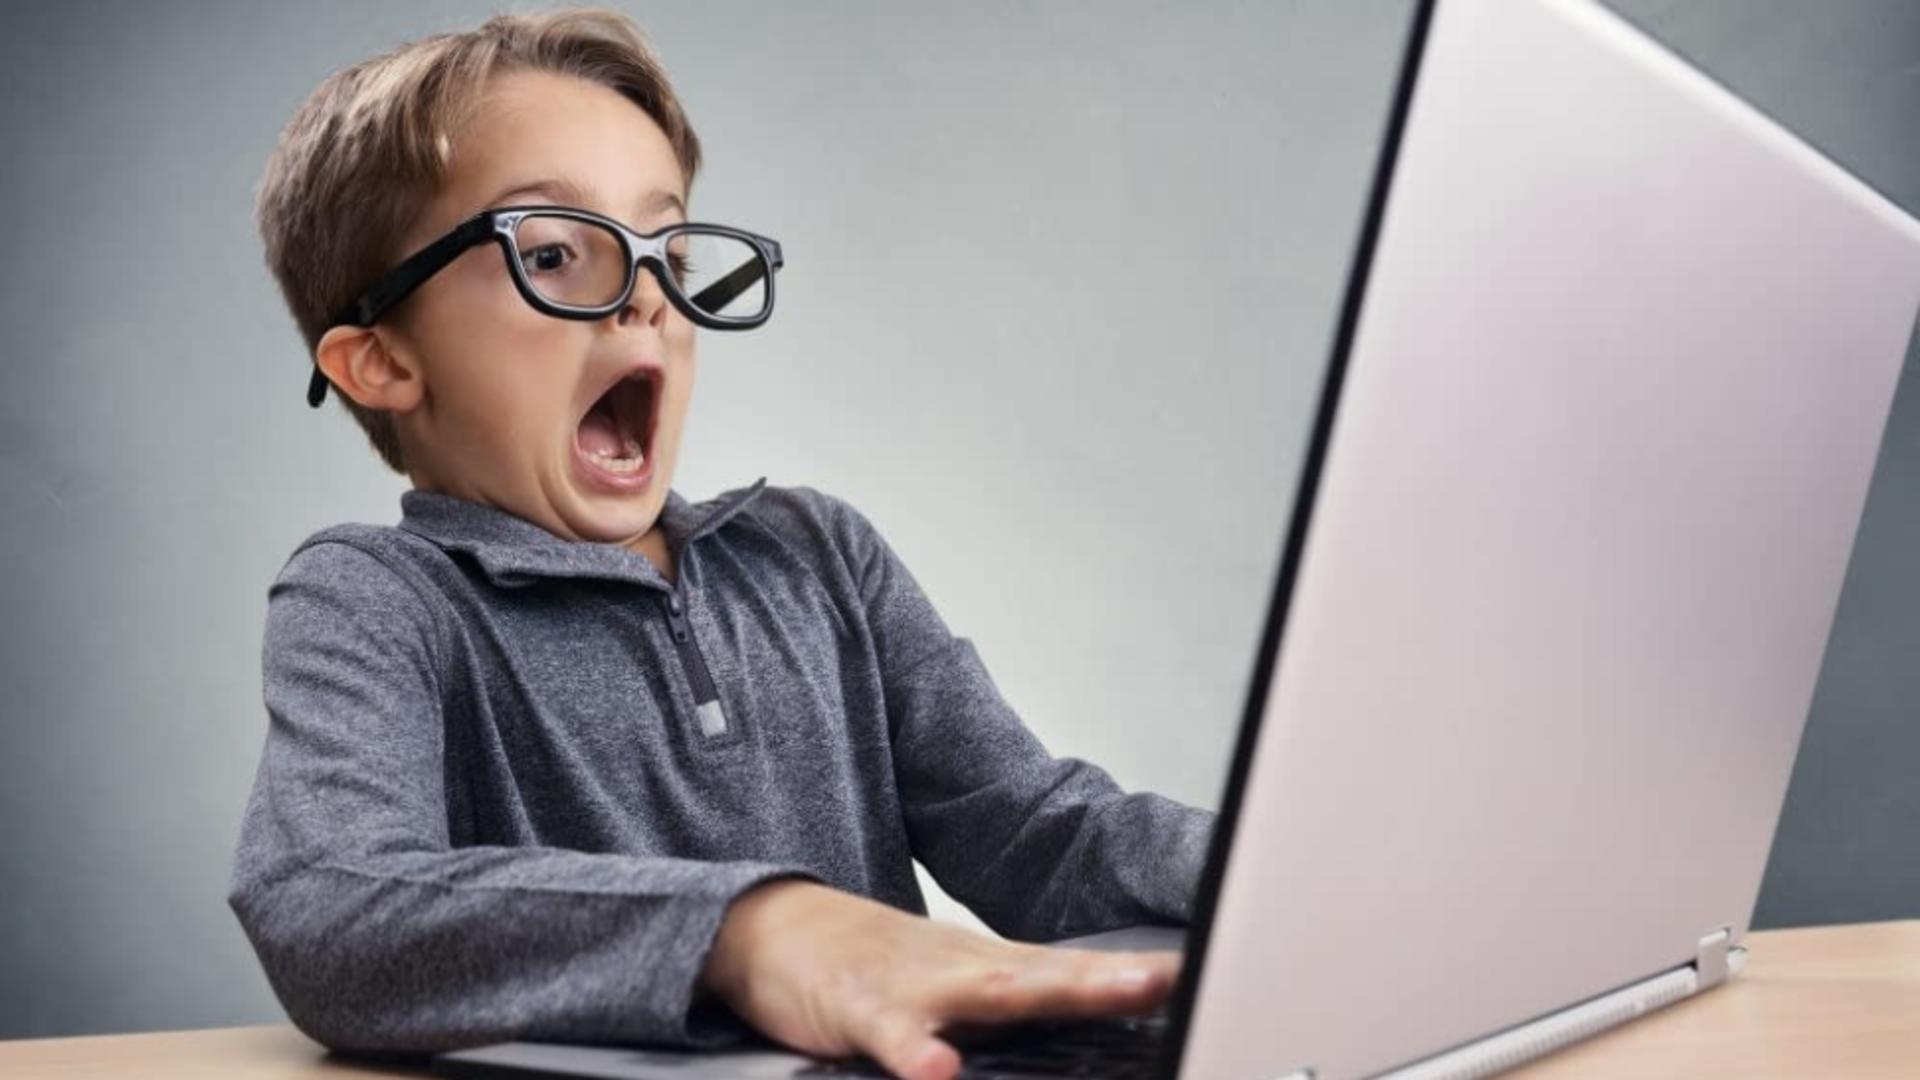 Statistici îngrozitoare – Copiii sunt expuși la pericolele de pe internet de la vârste tot mai fragede